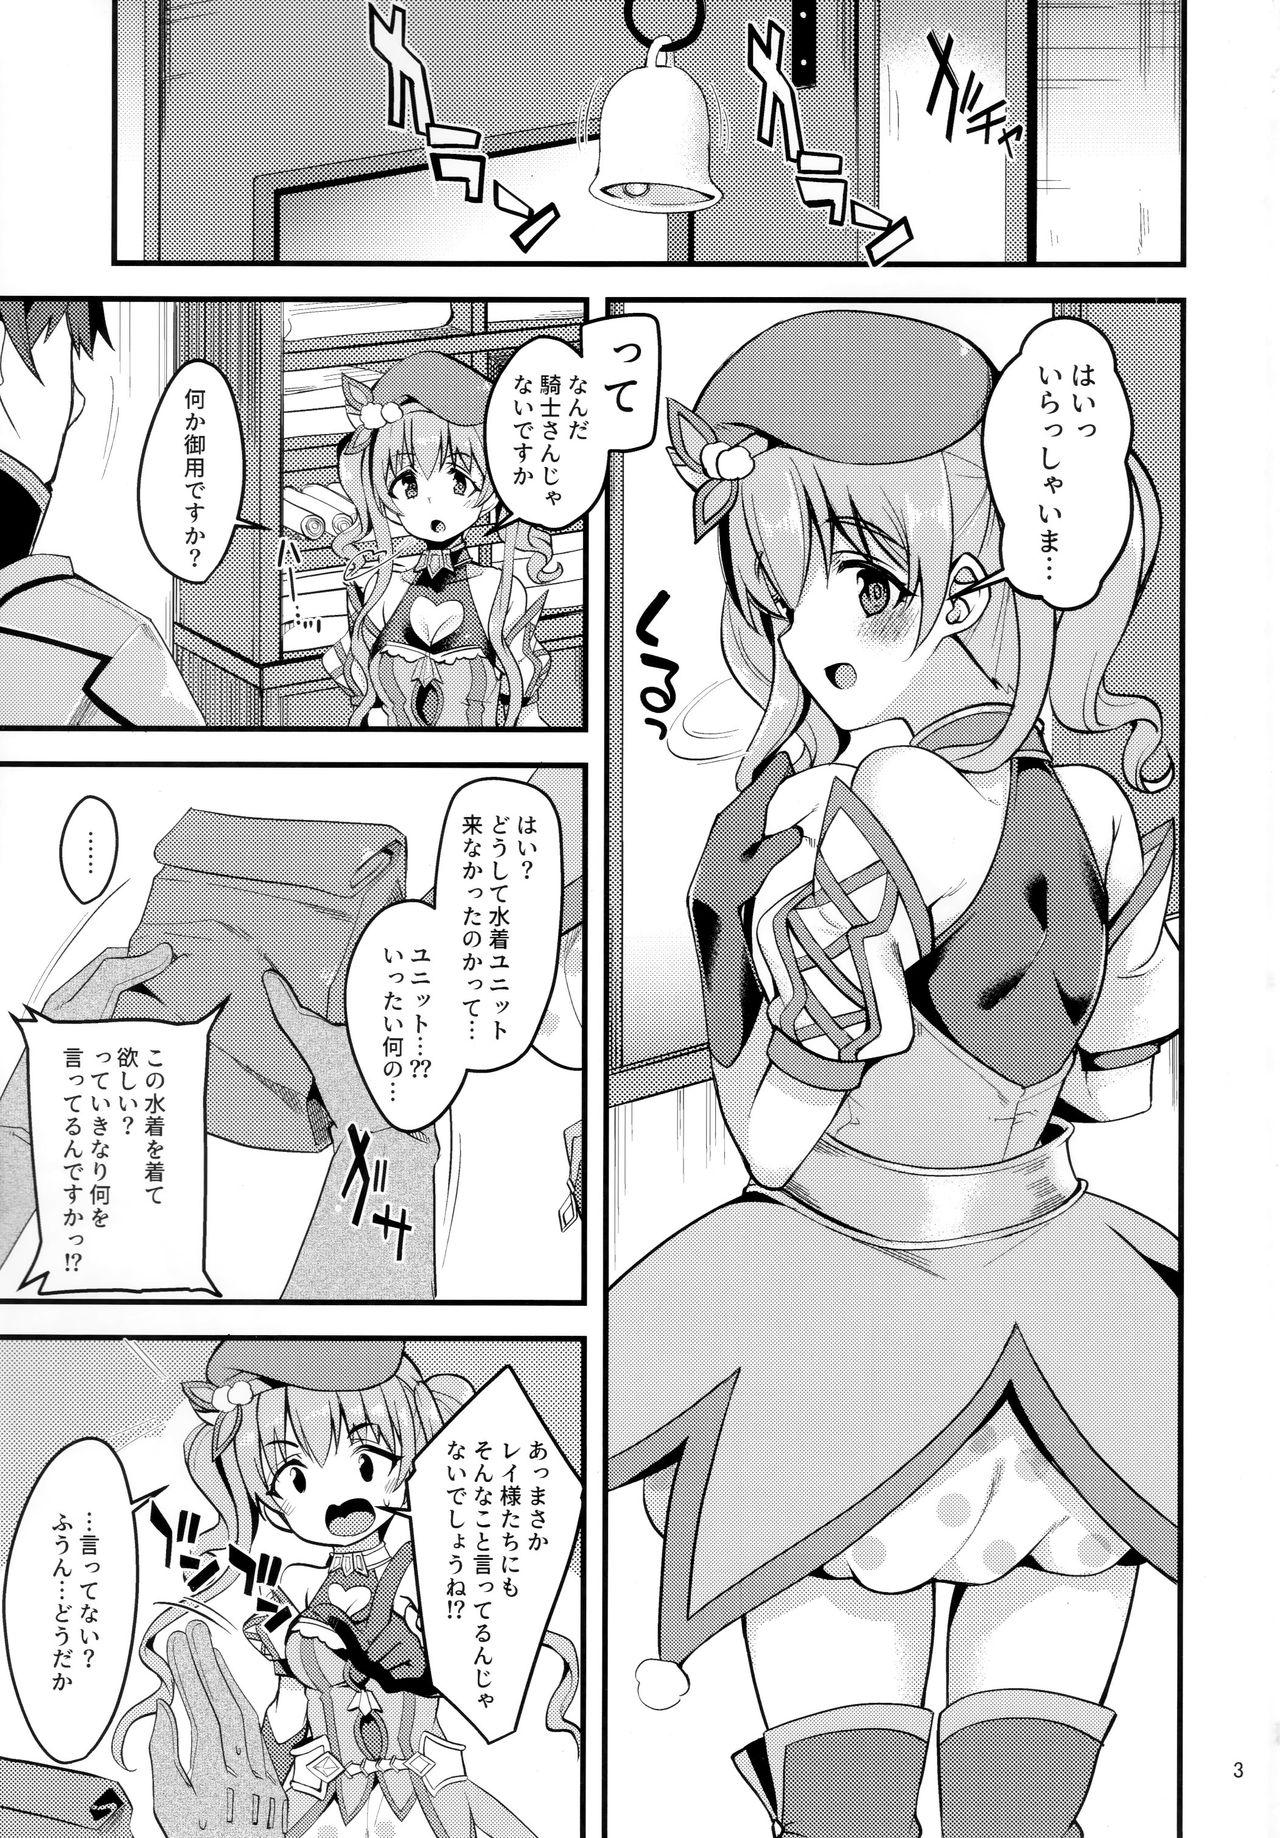 Suckingcock Tsumugi Make Heroine Move!! 02 - Princess connect Virtual - Page 2